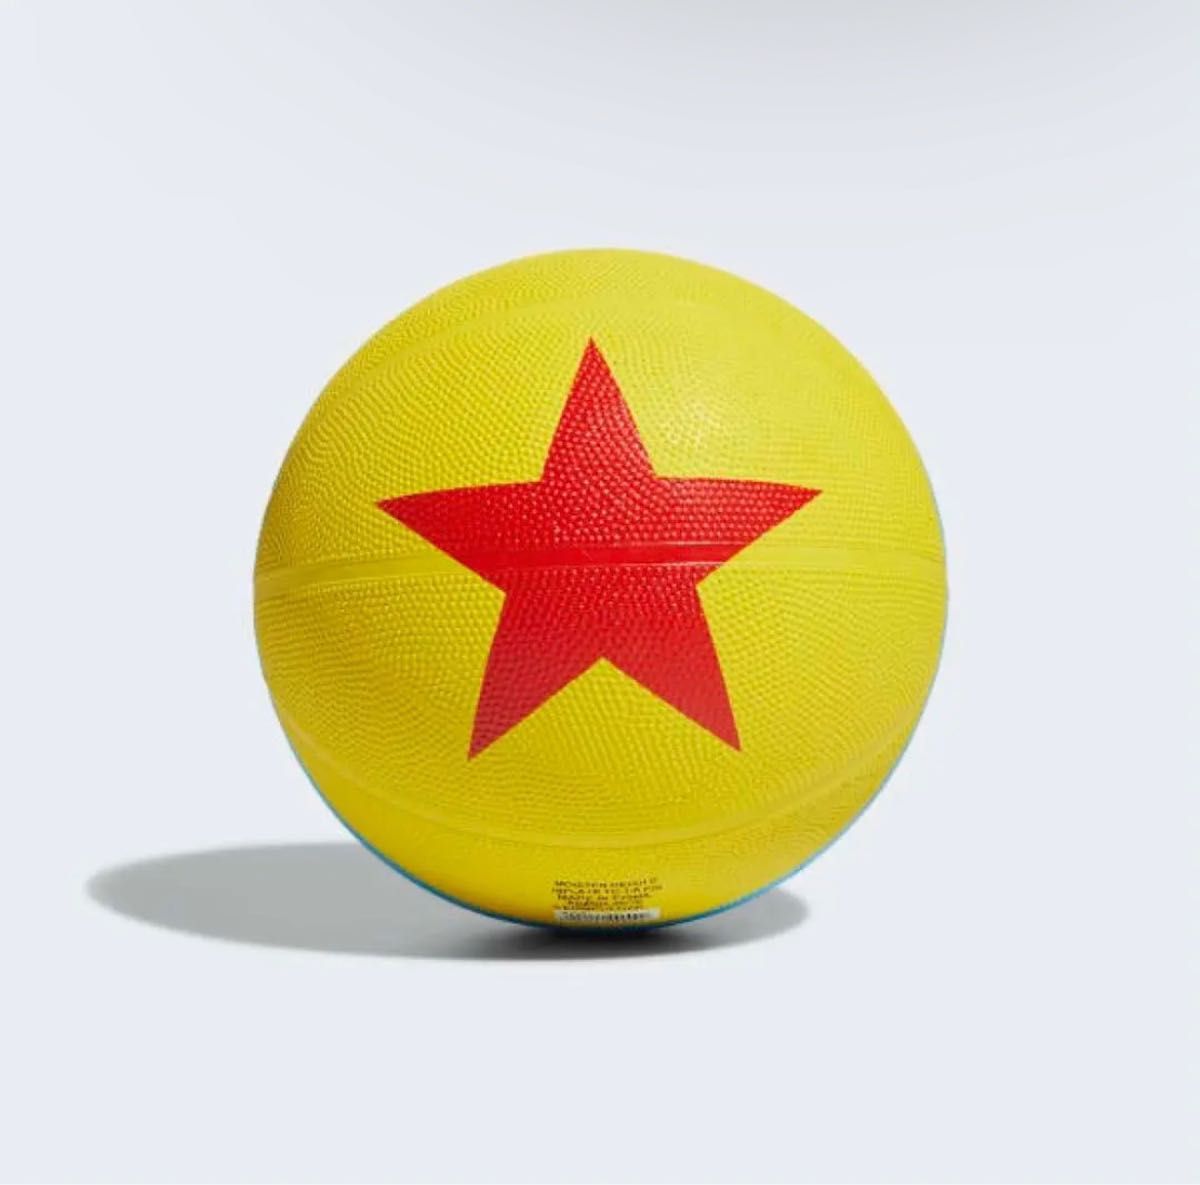 日本未発売 PIXAR世界100個限定 PIXAR×adidas ピクサーボール